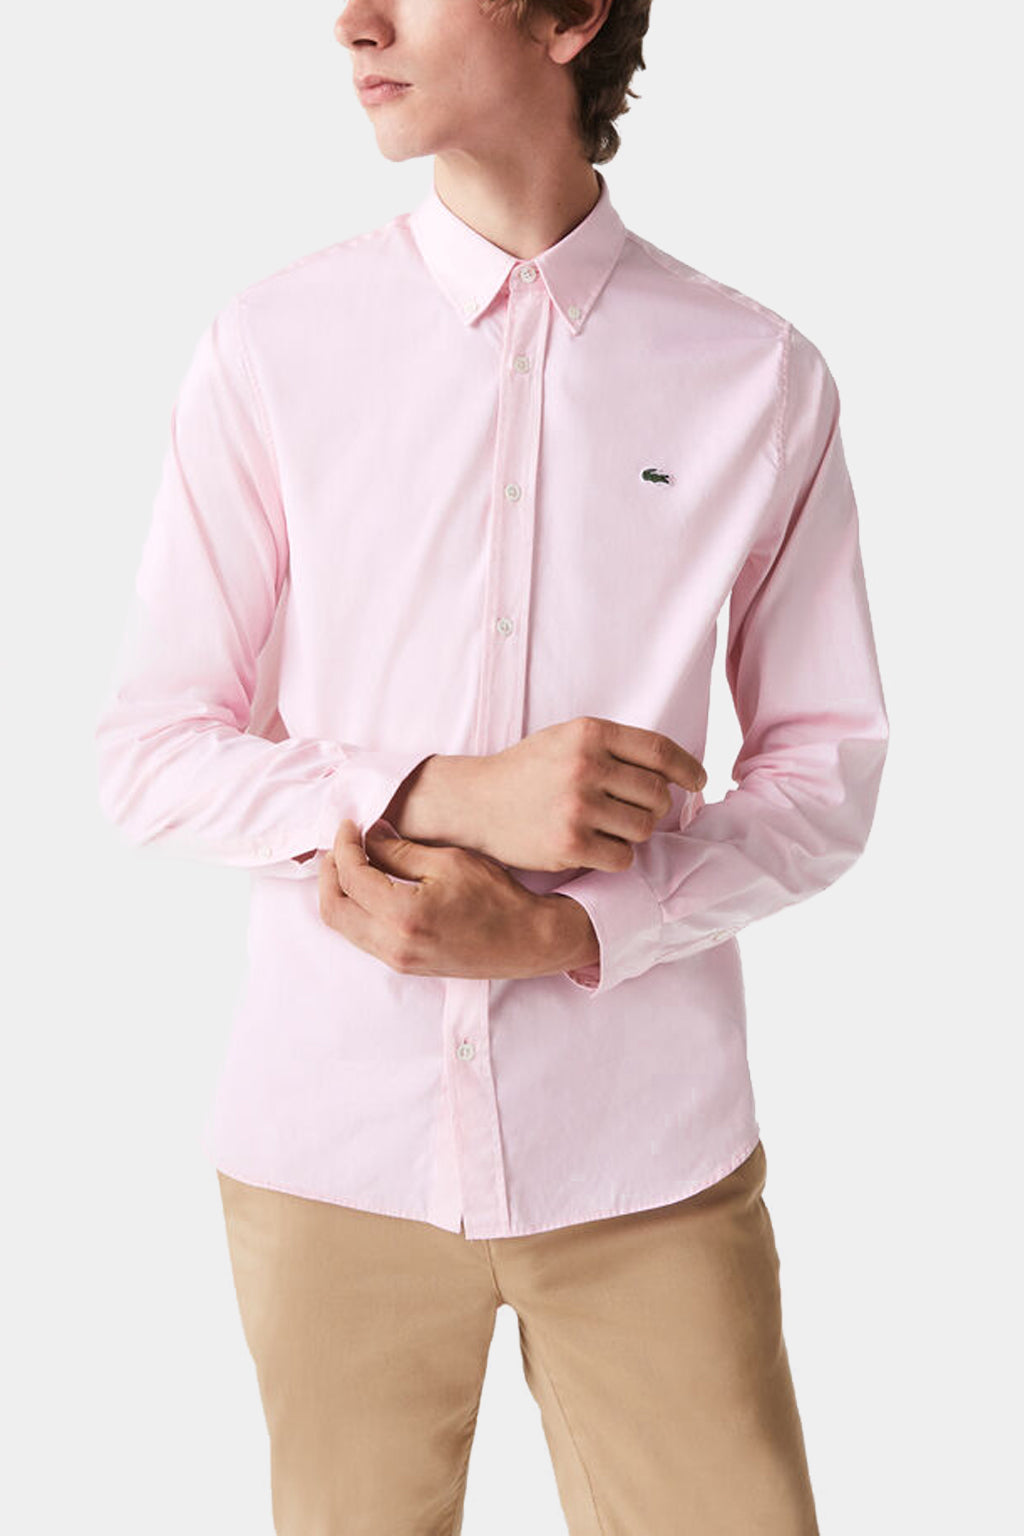 Lacoste - Men's Regular Fit Premium Cotton Shirt